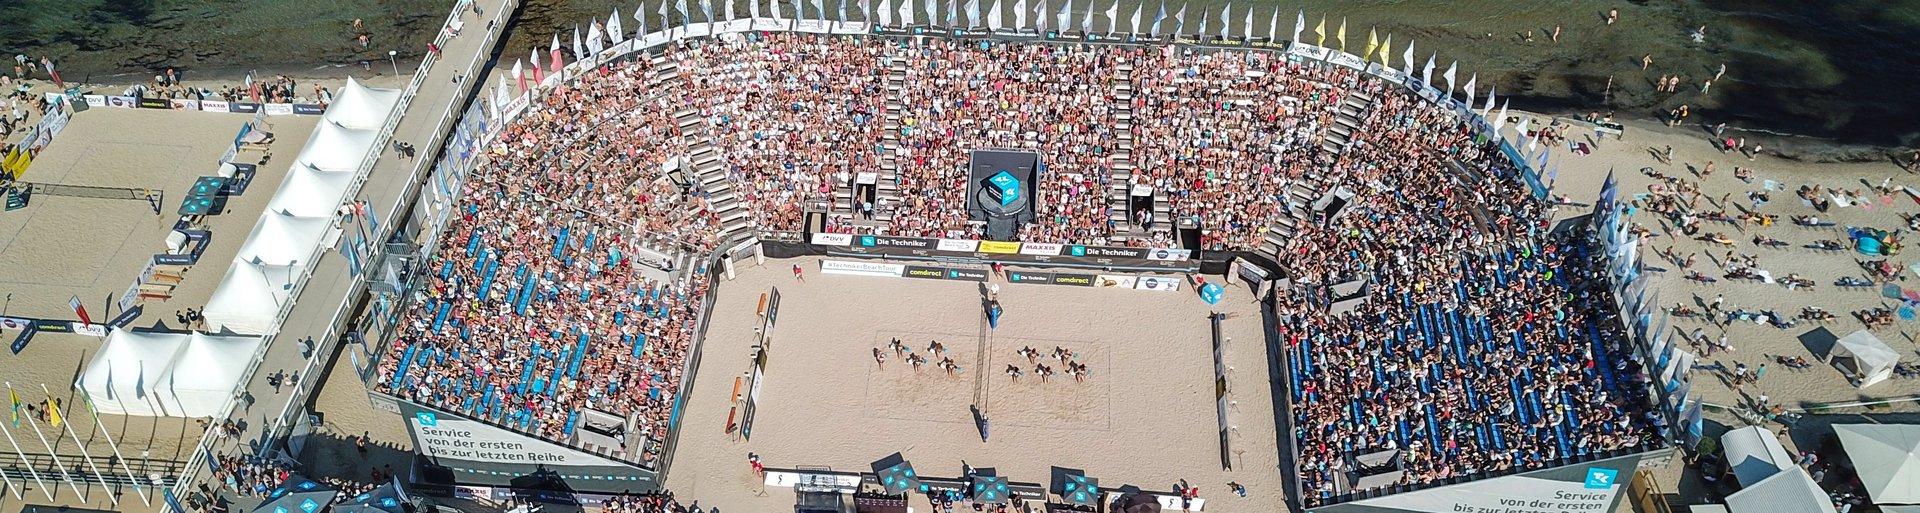 Luftaufnahme eines gefüllten Stadions am Strand